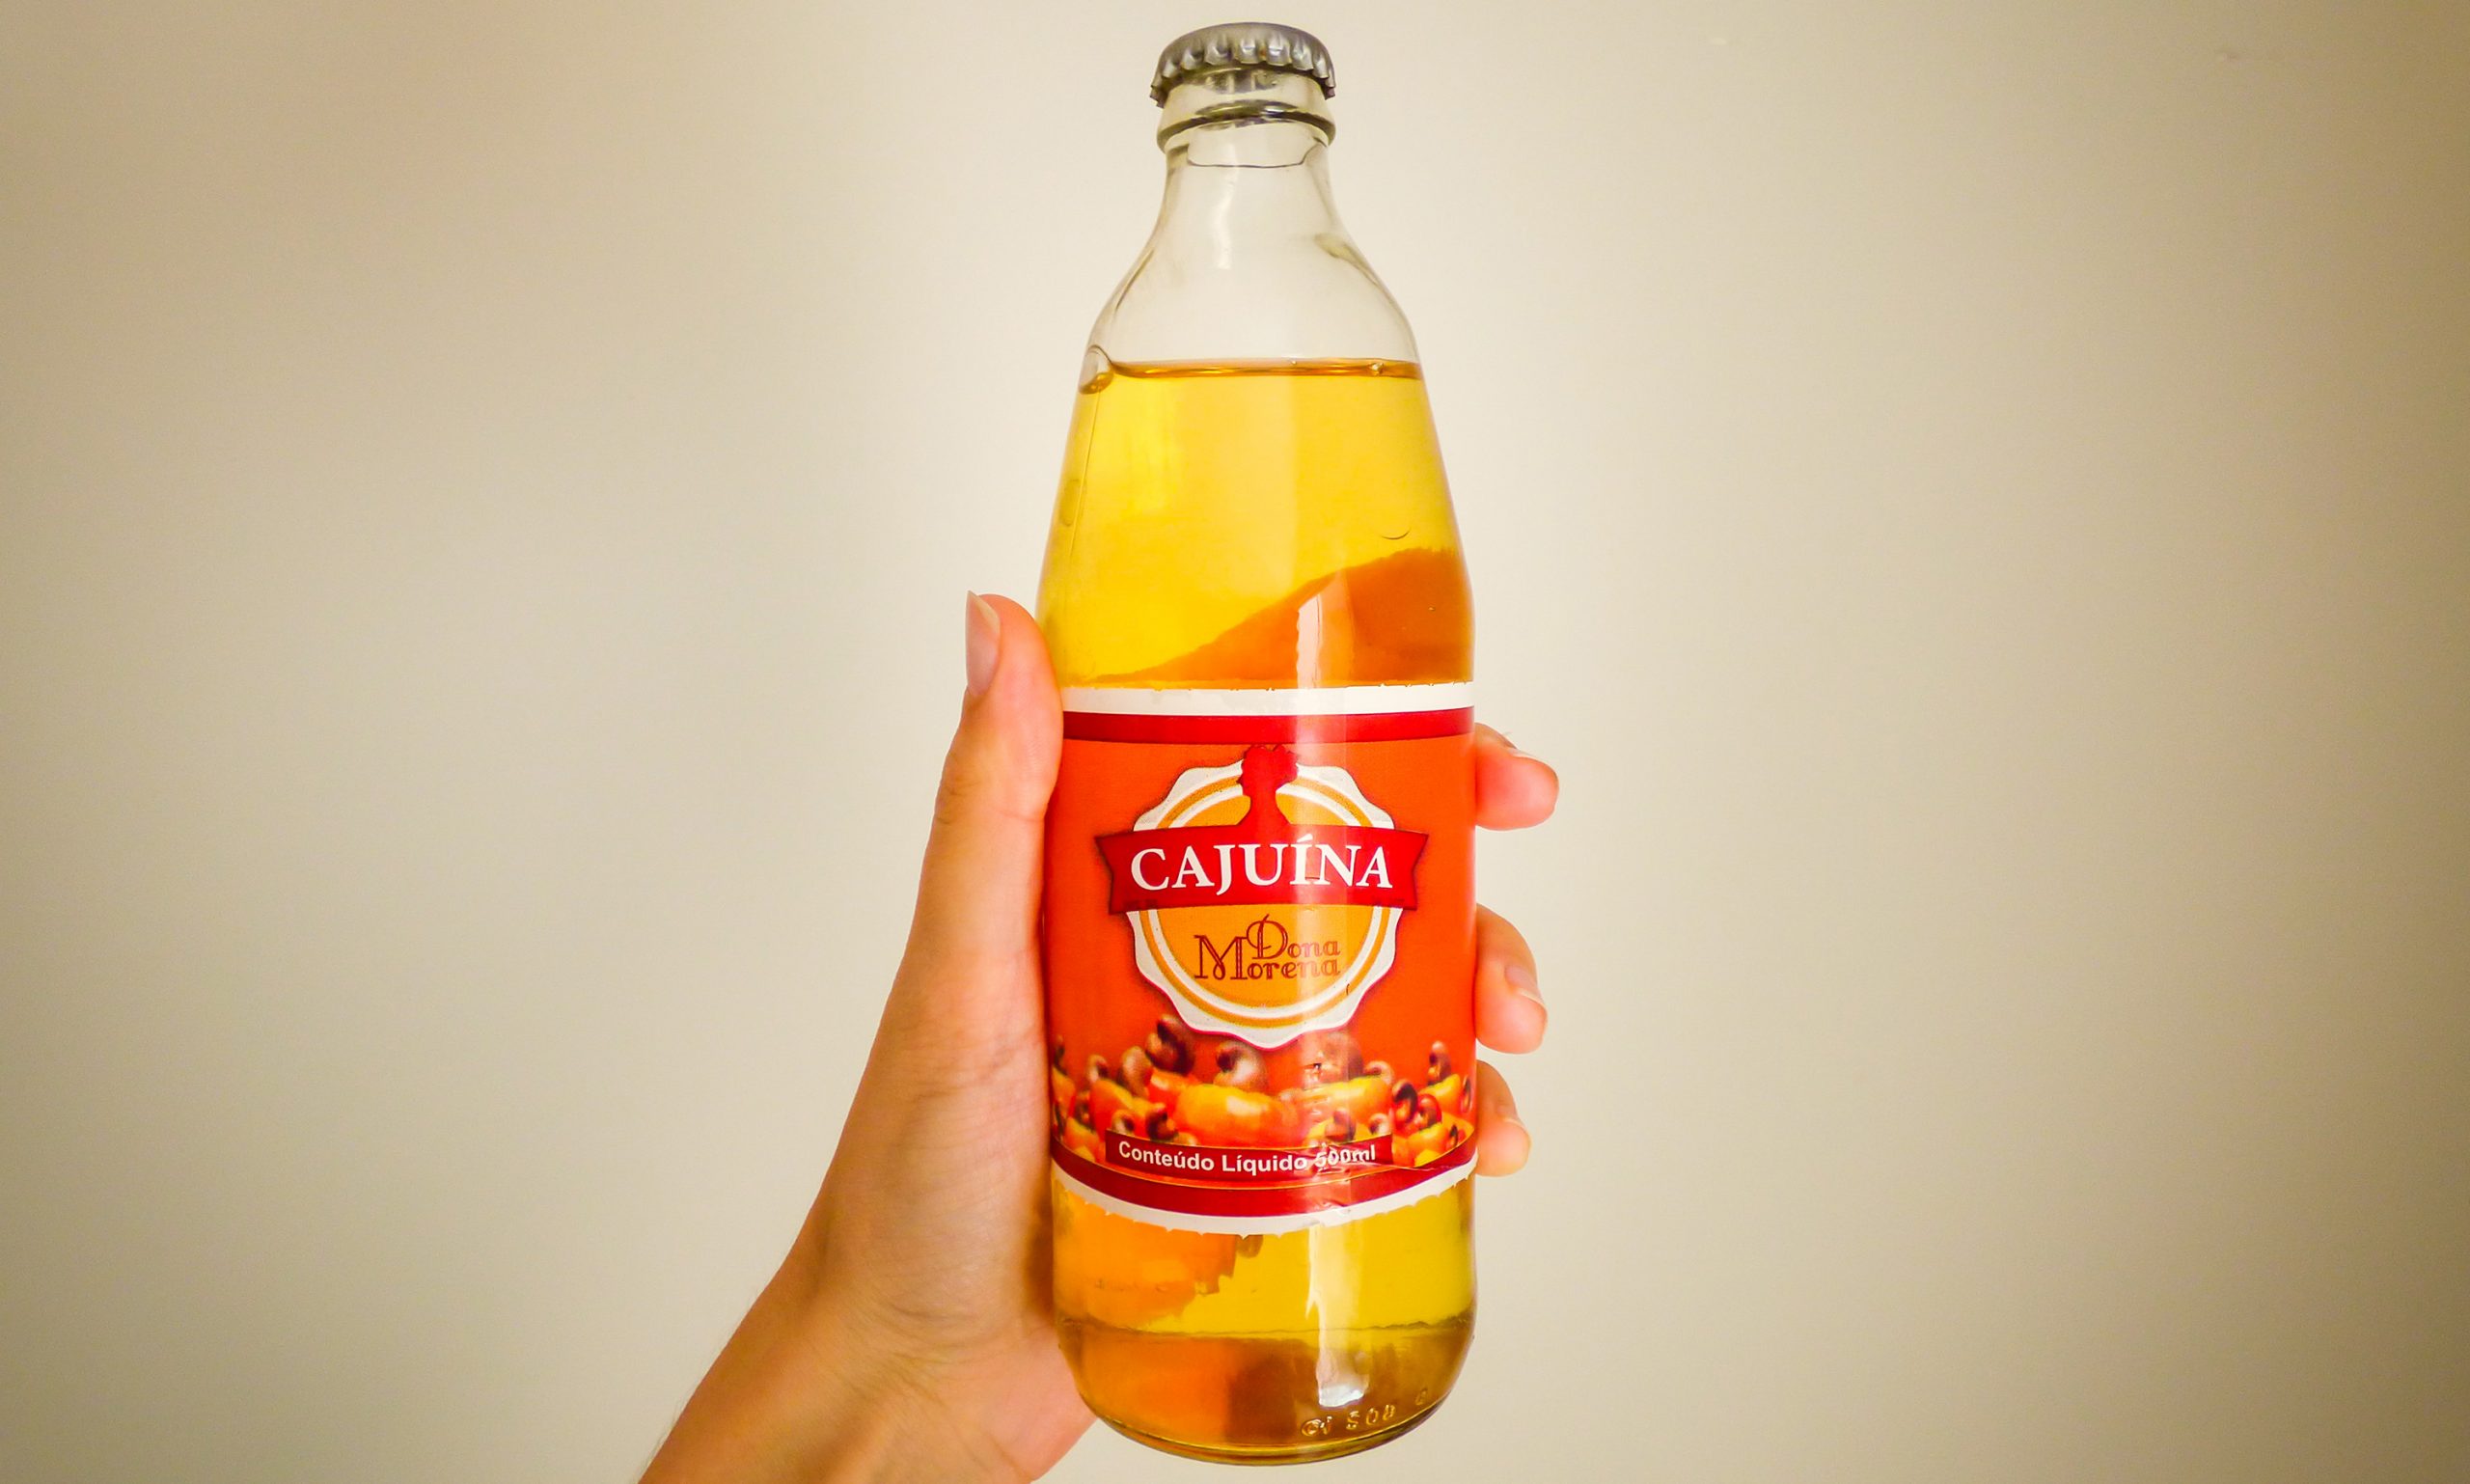 Cajuína là loại đồ uống yêu thích của nhiều người tại Brazil